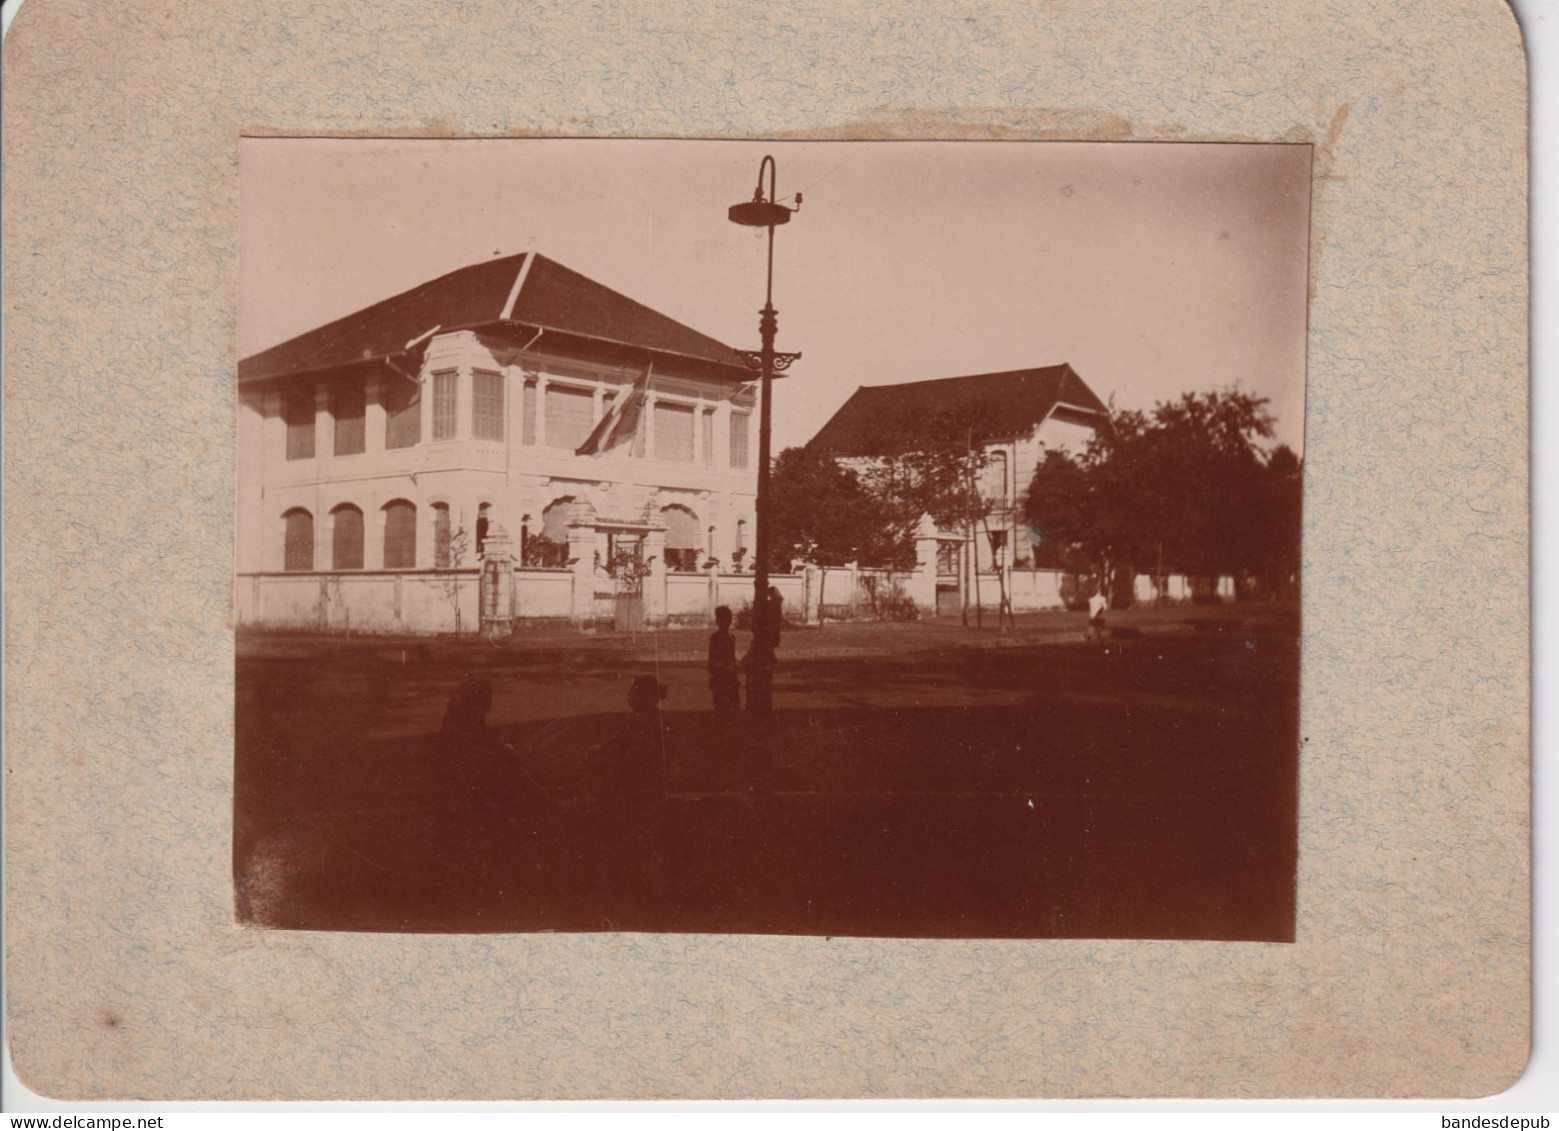 Photo Originale Ancienne Maison ASIE CAMBODGE PNOM PENH Maison Habitation Coloniale Collée Sur Carton - Asia